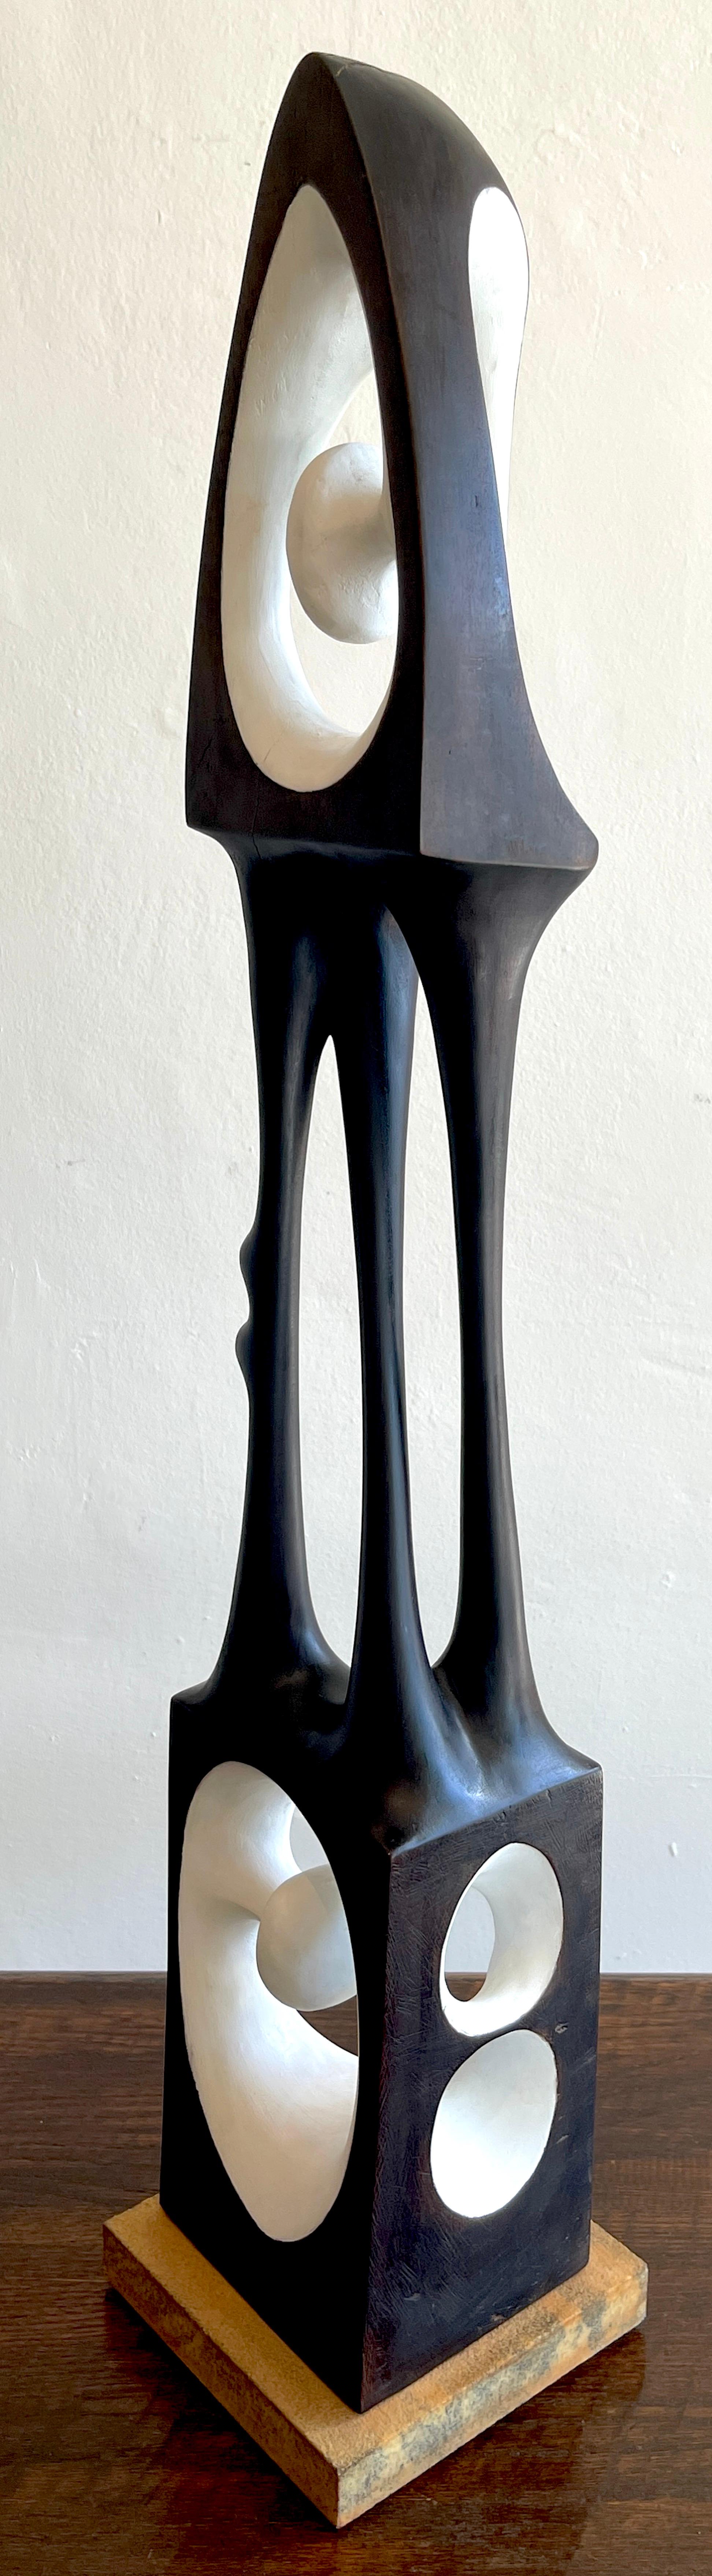 Agustín Cárdenas Abstract Polychromed Wood Sculpture 1